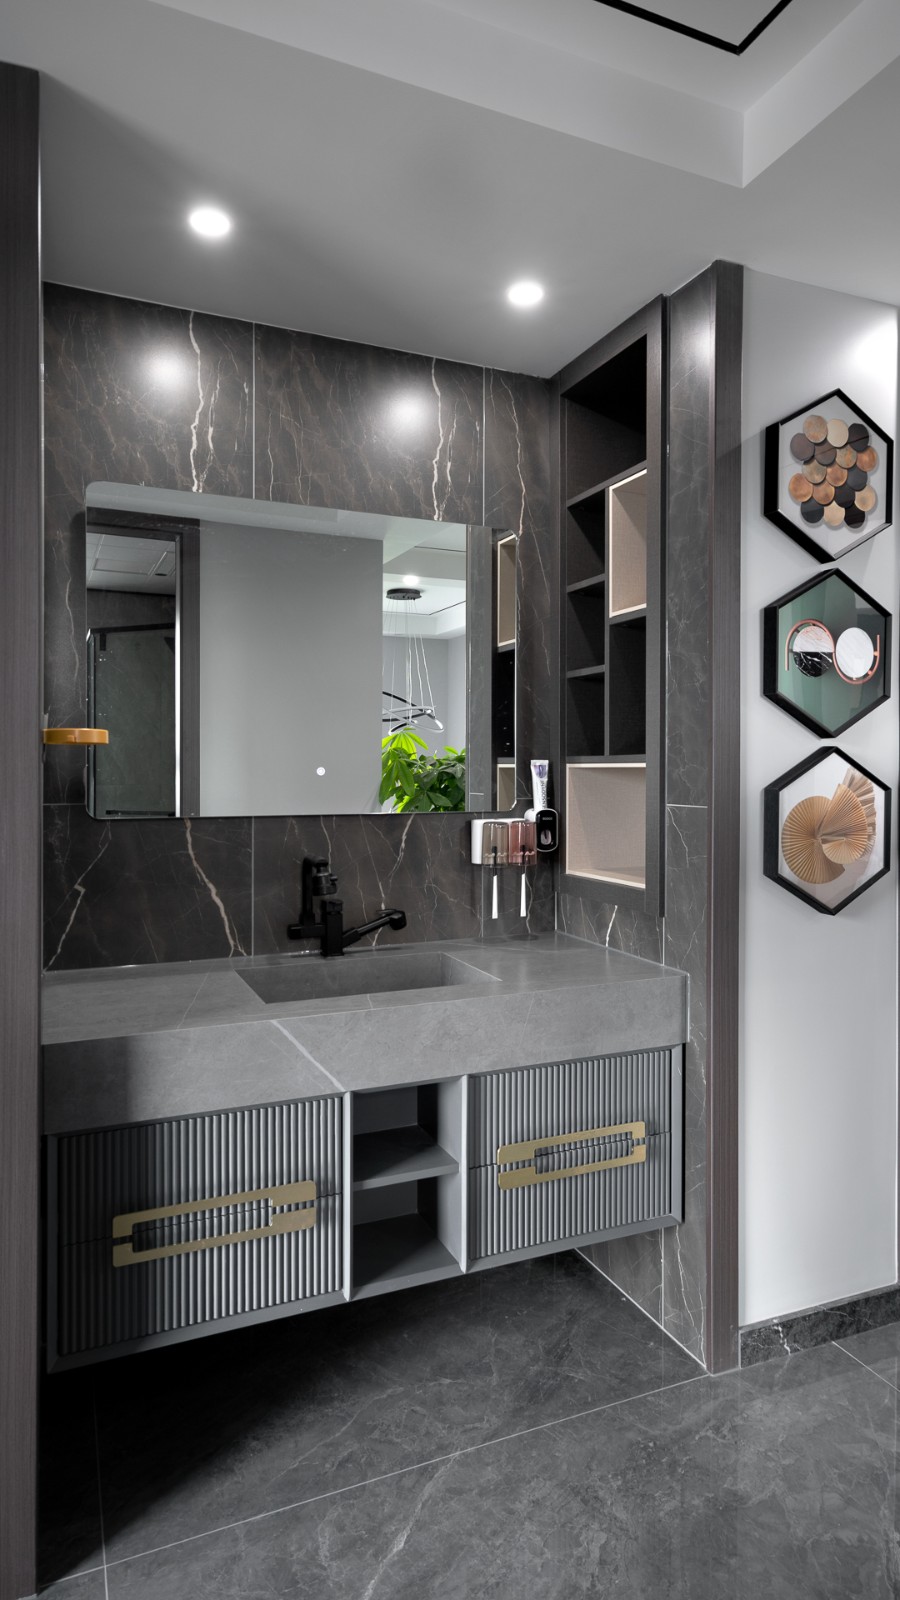 卫浴空间都采用***的灰色系进行深浅配色,局部点缀金色元素,突出现代